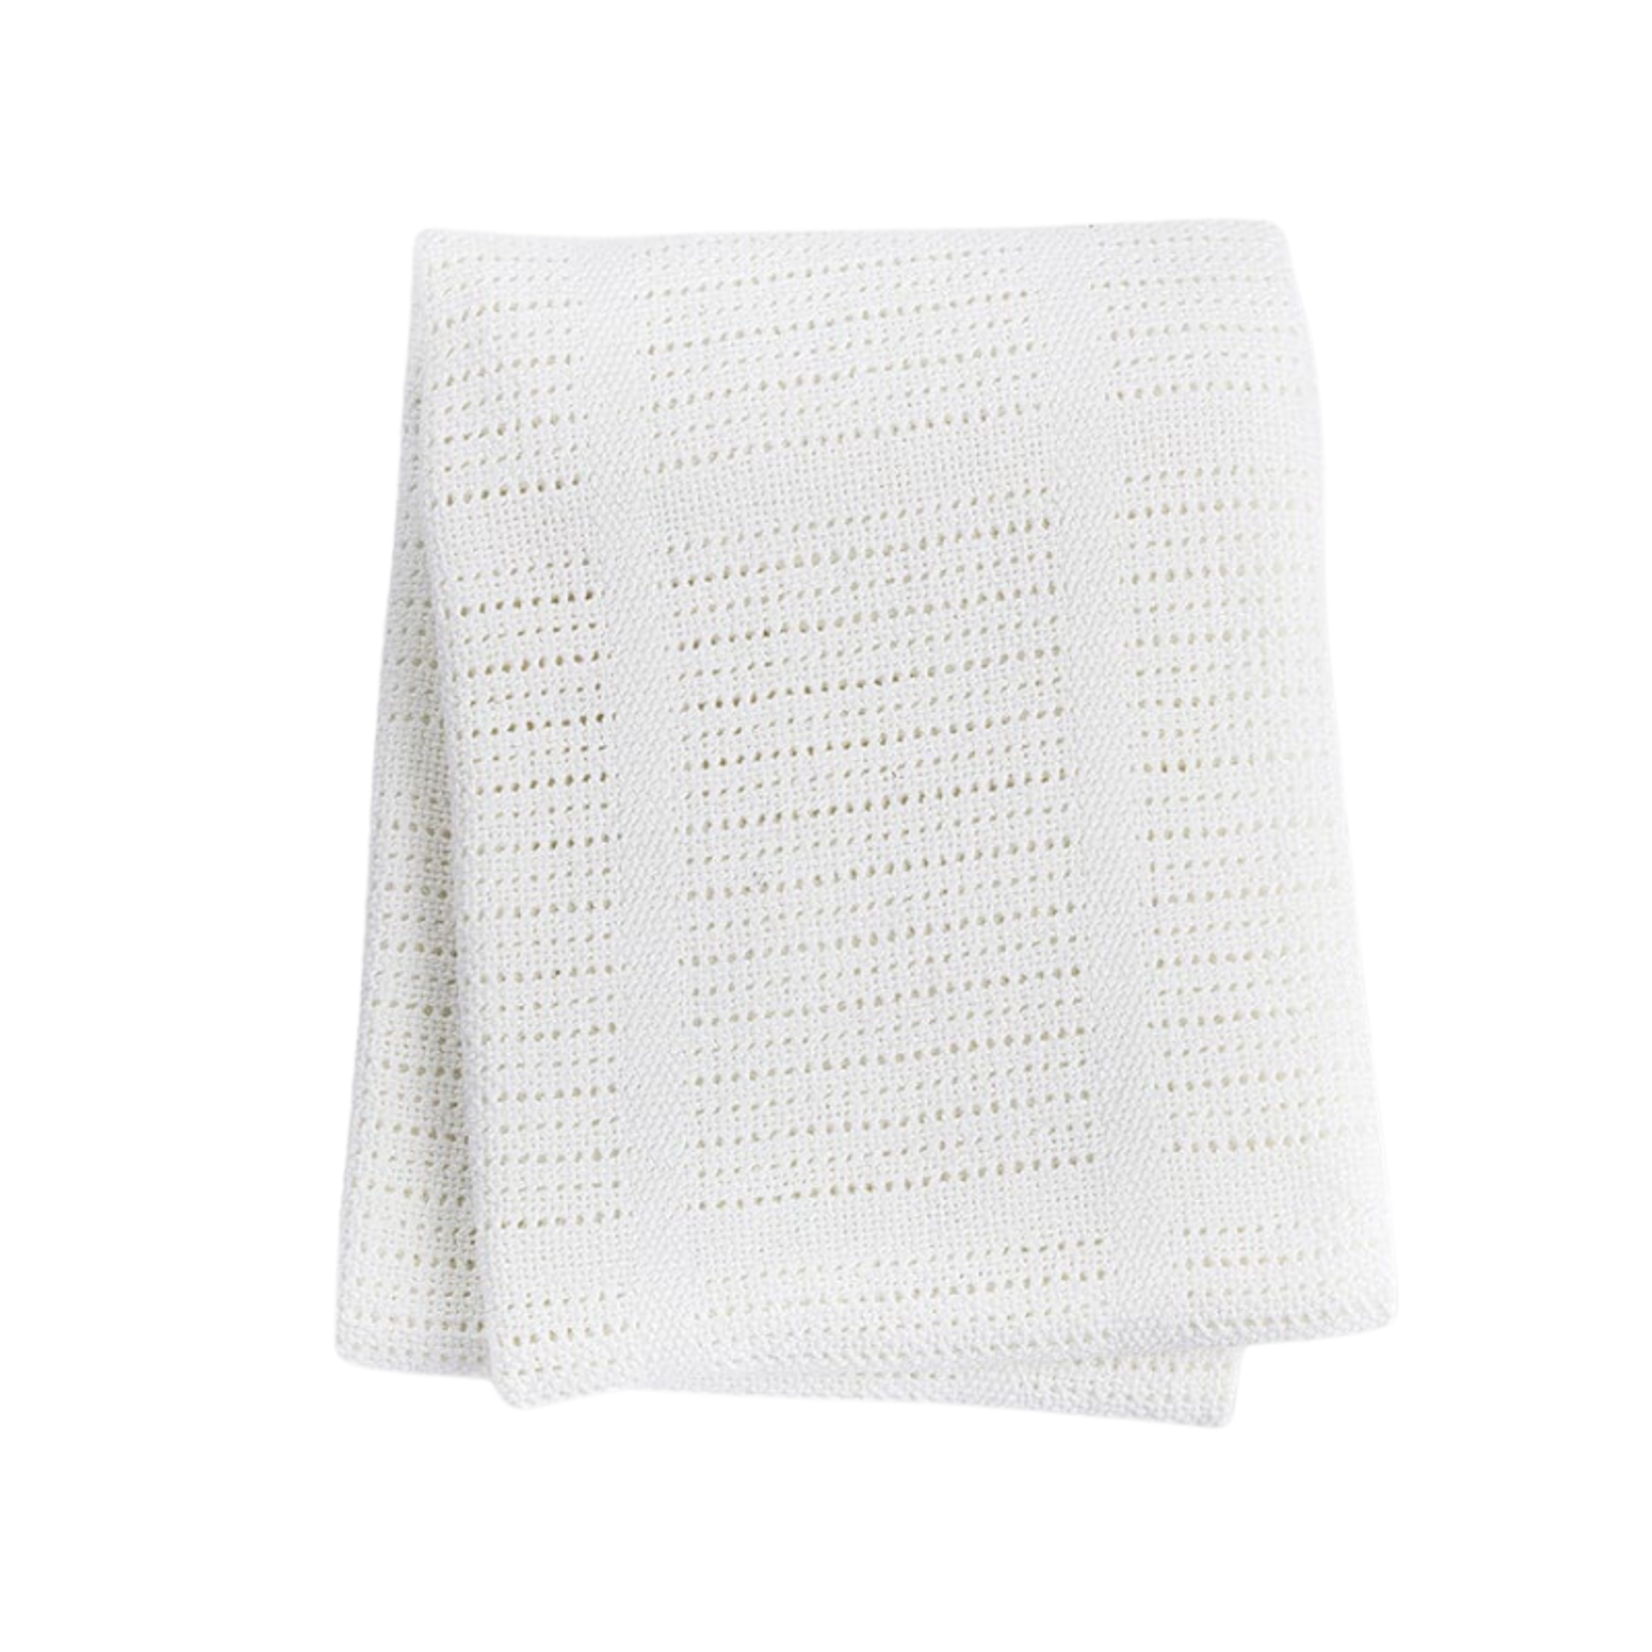 Lulujo Lulujo Cellular Blanket White 40"x 30"